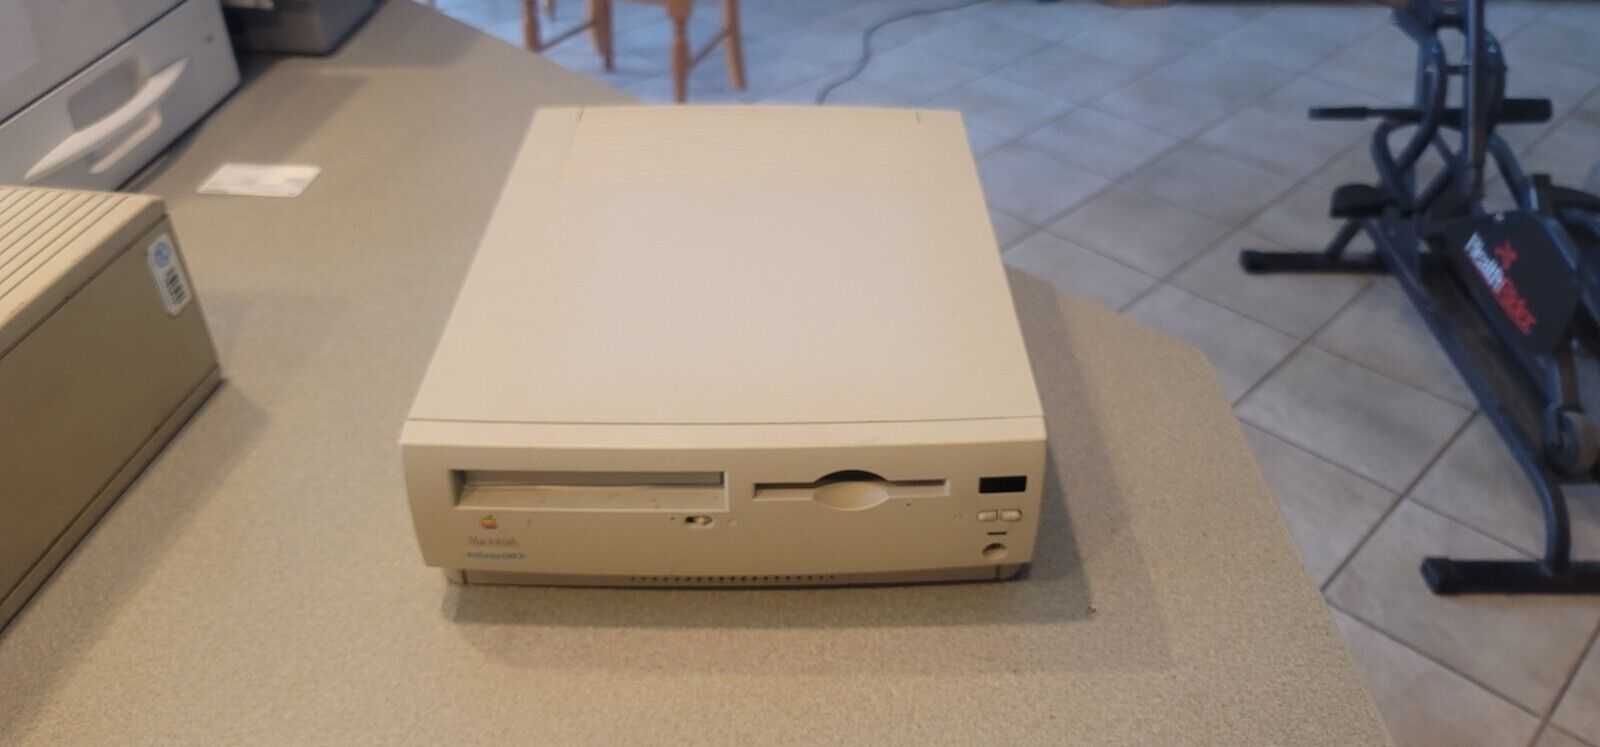 Vintage Apple Macintosh Performa 630CD Untested